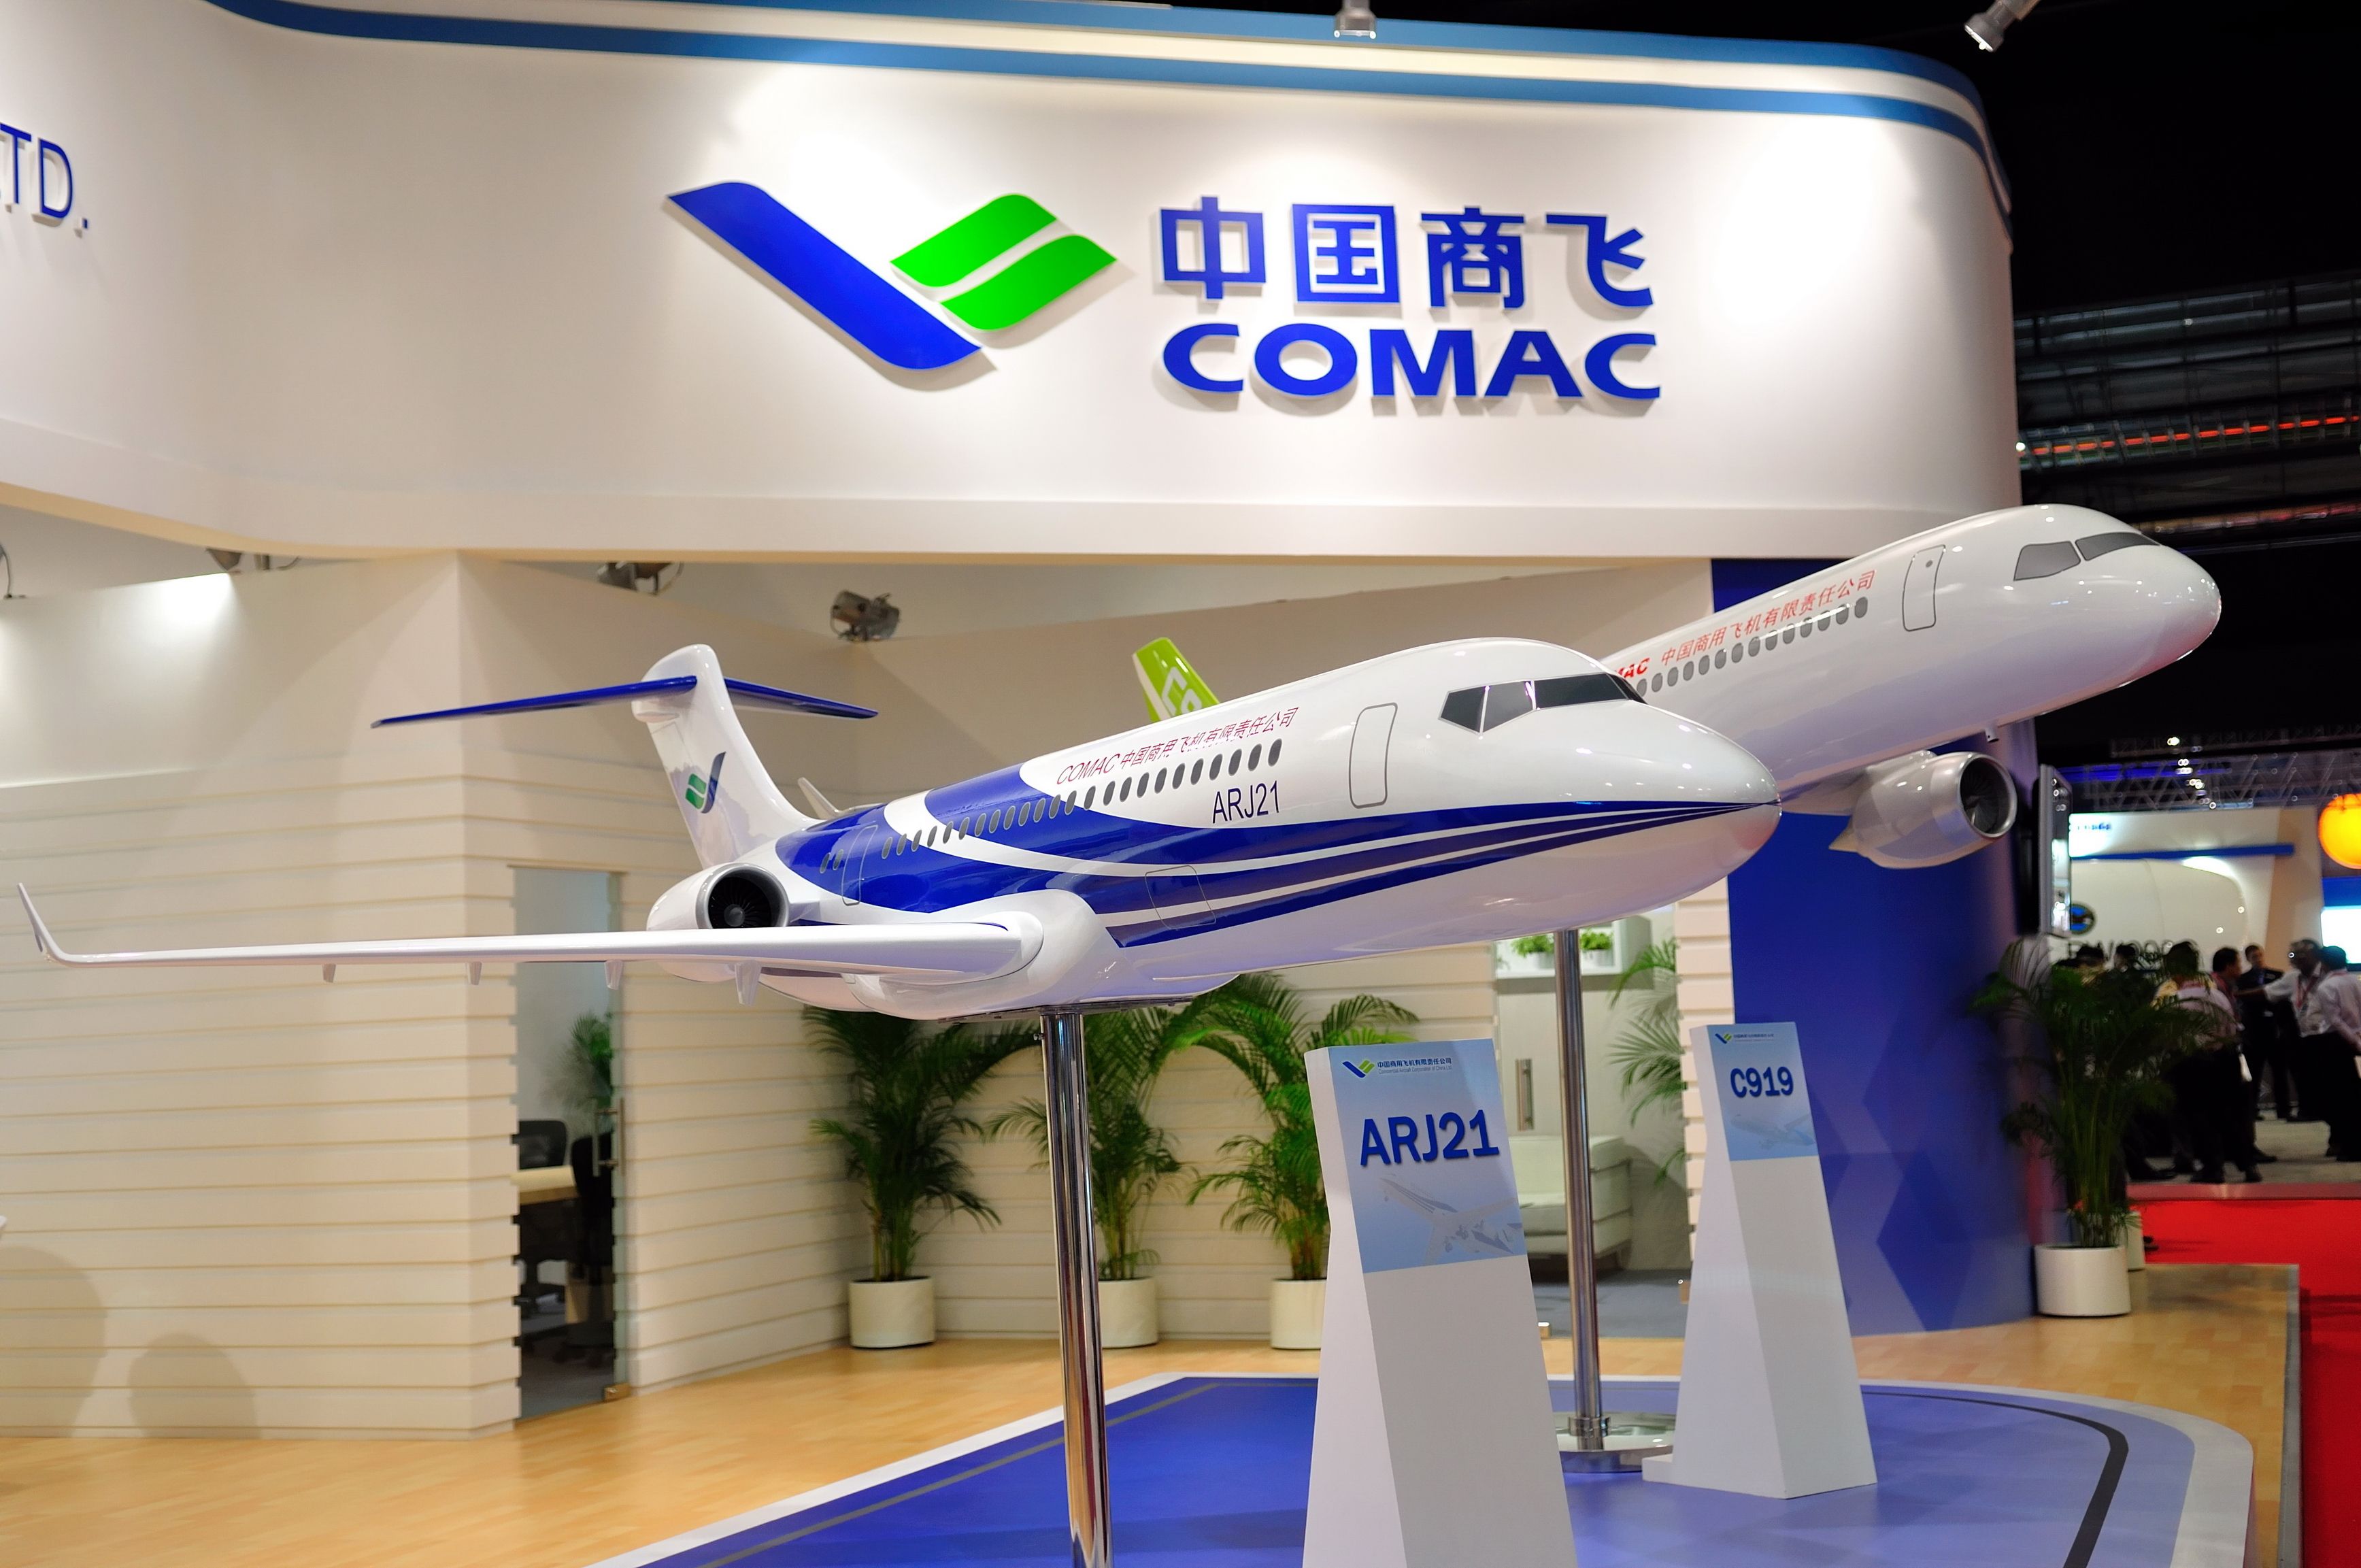 COMAC aircraft models